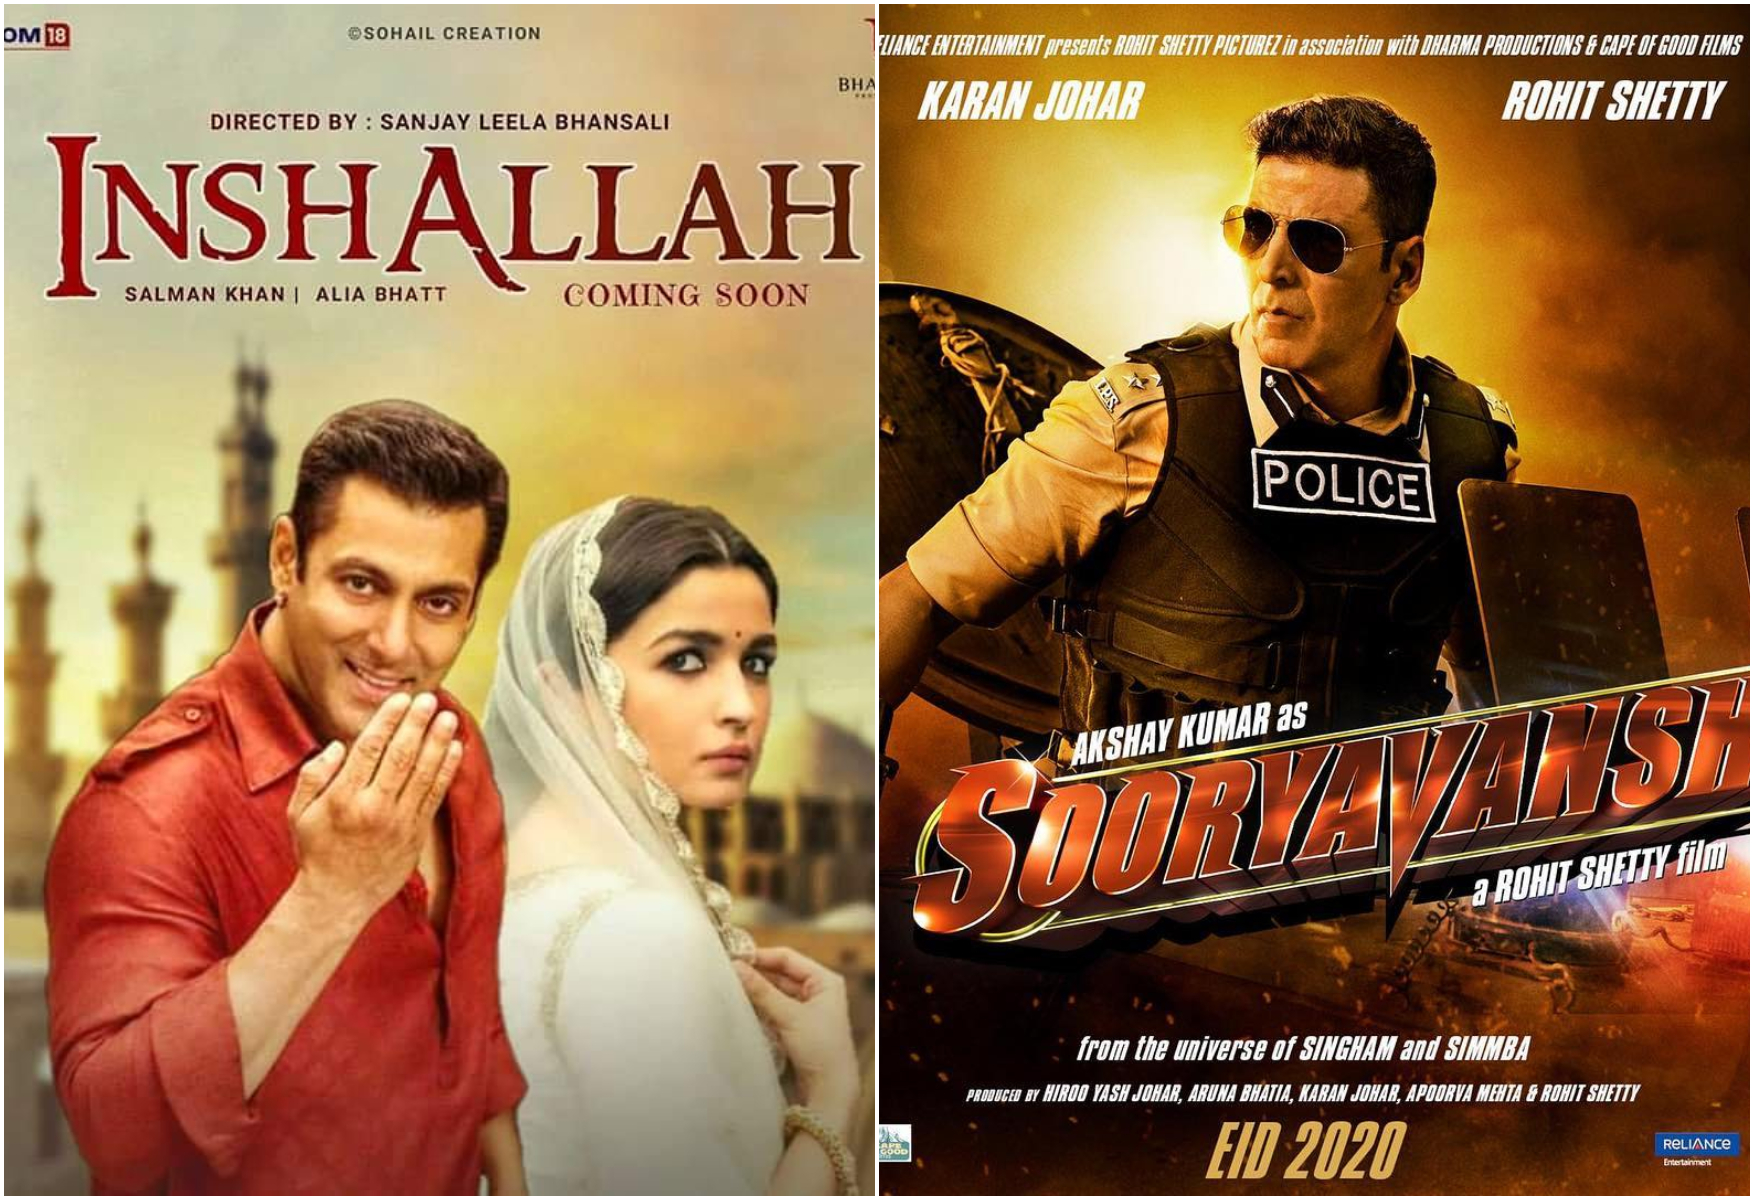 Bollywood films clashing in 2020